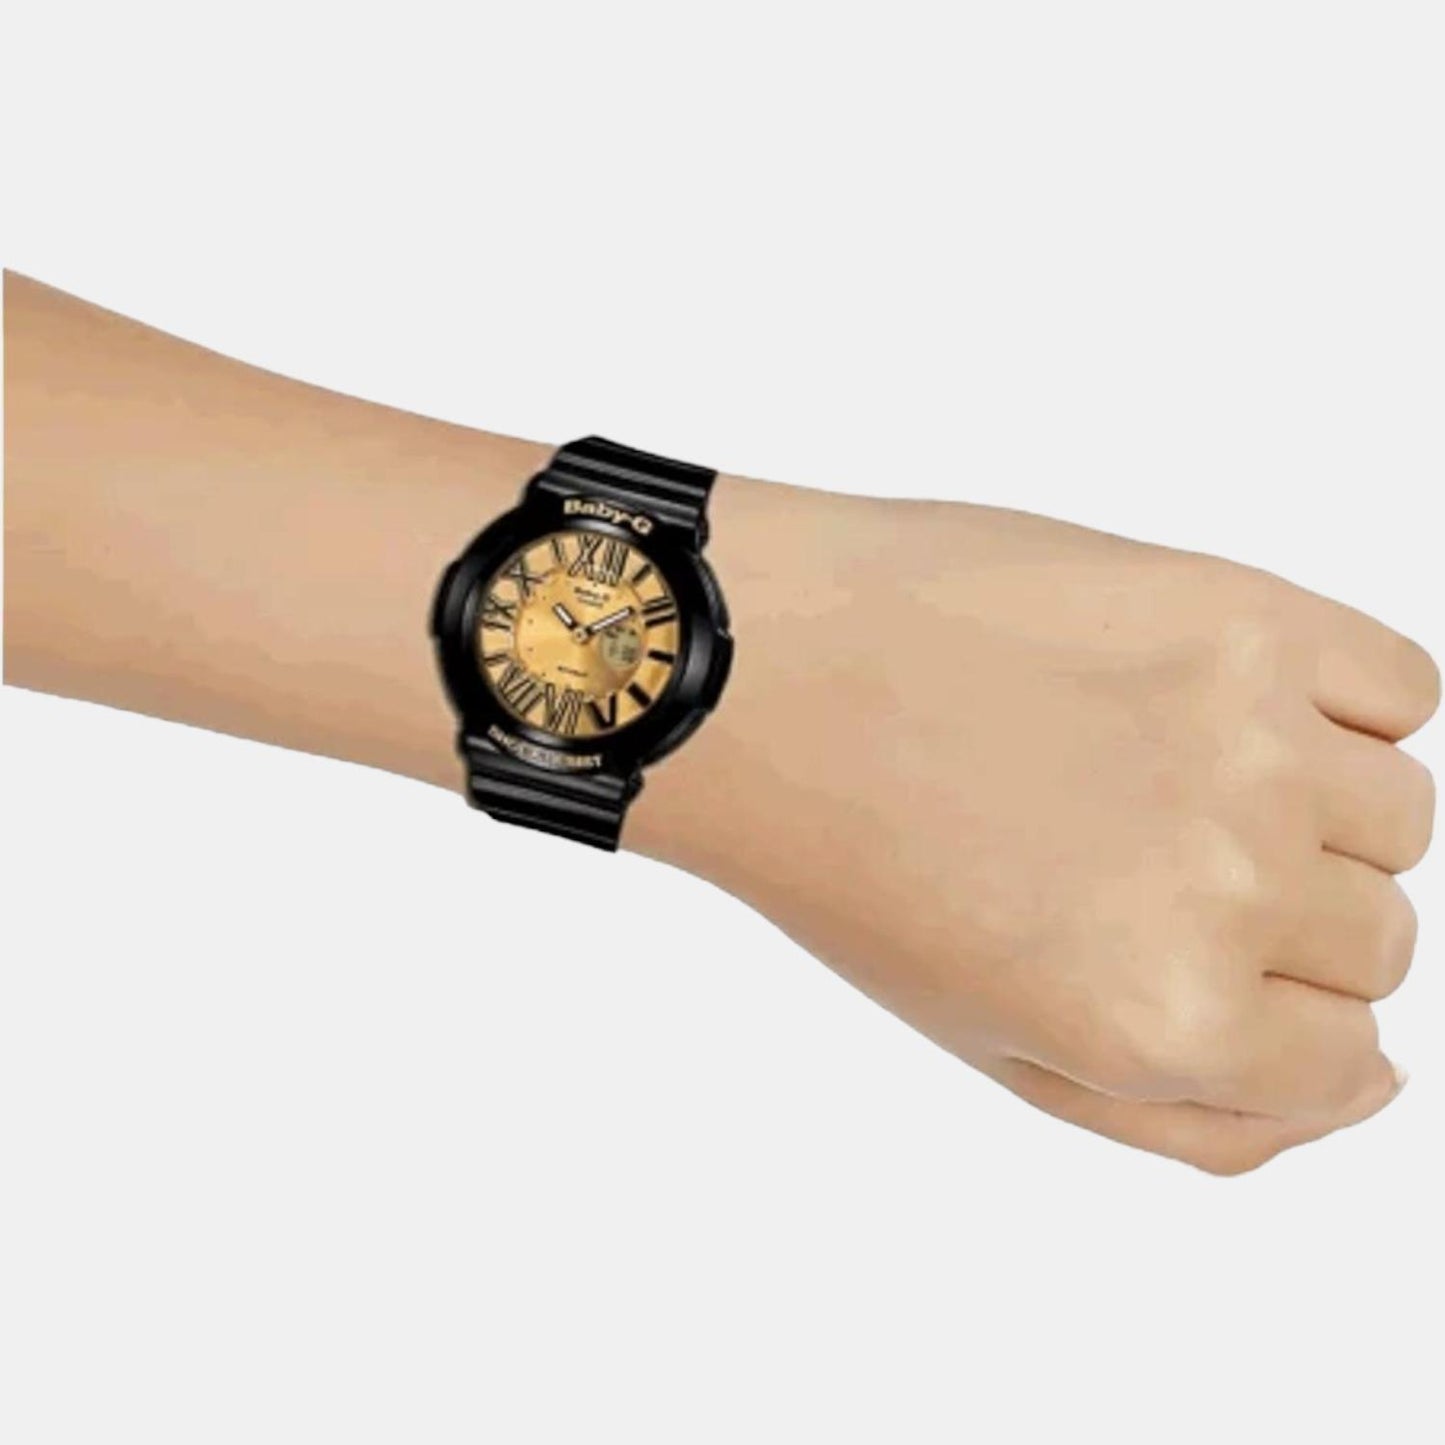 Baby-G Female Analog-Digital Leather Watch B143